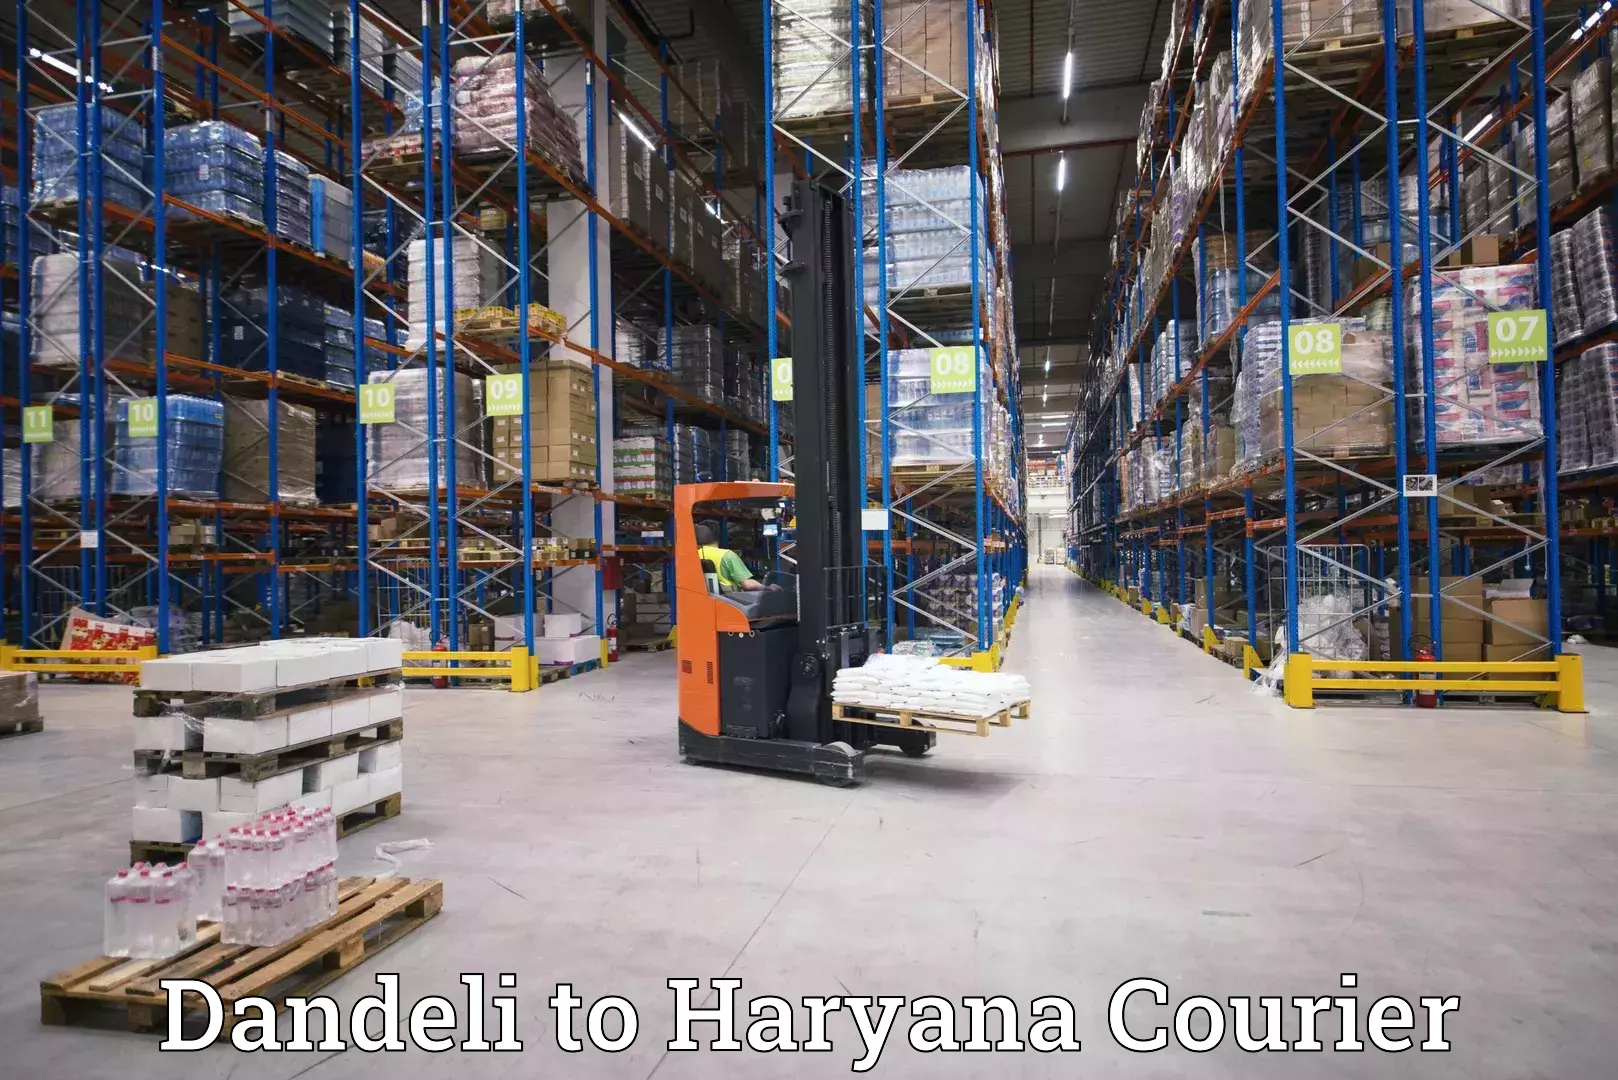 Efficient parcel service Dandeli to Gurugram